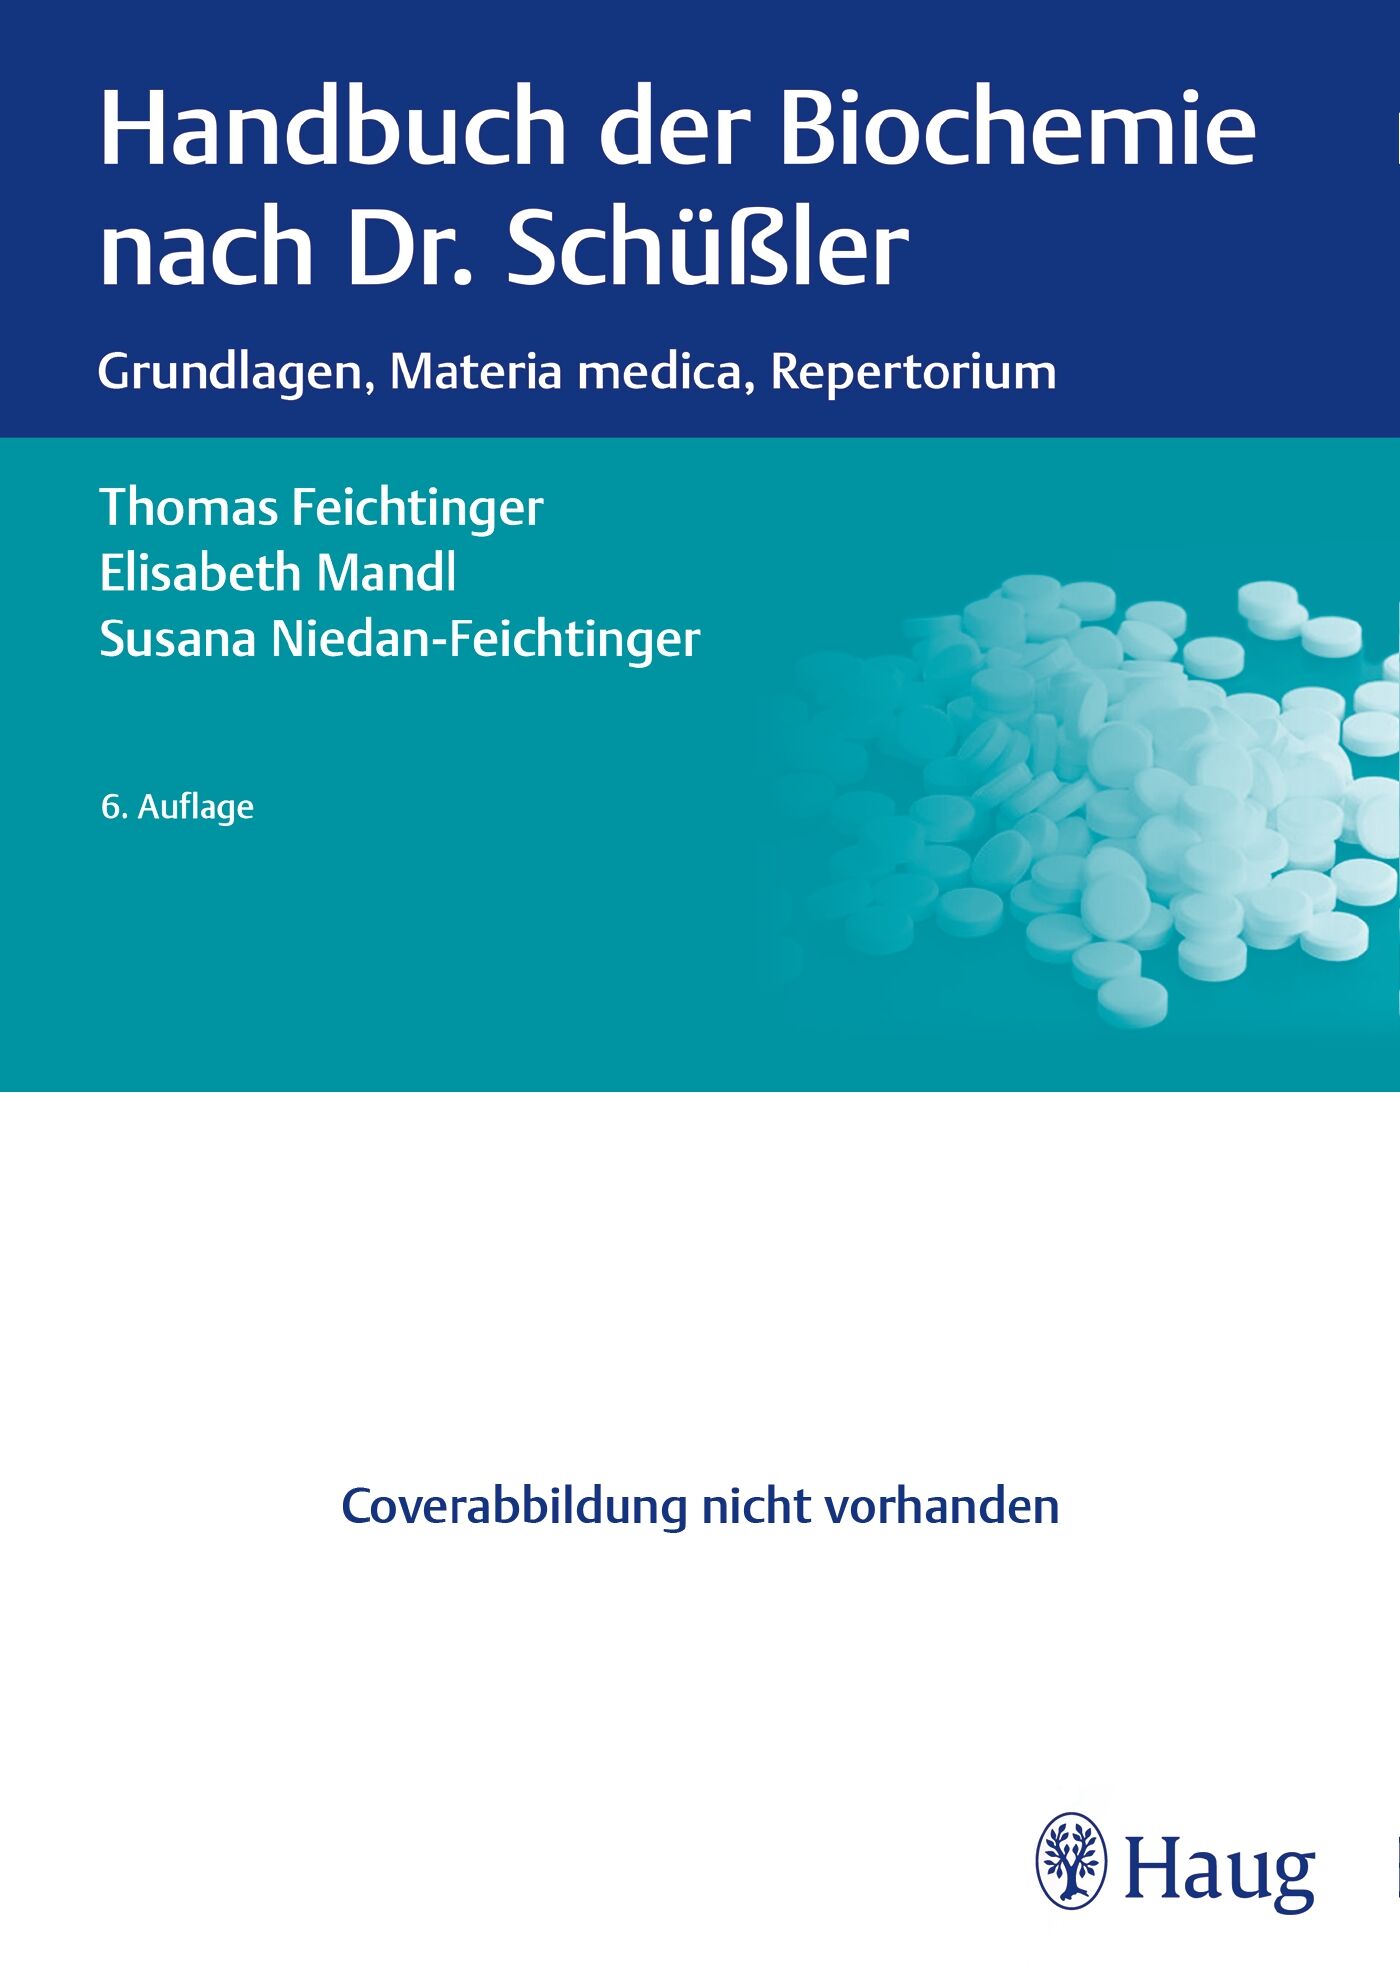 Handbuch der Biochemie nach Dr. Schüßler, 9783132402881